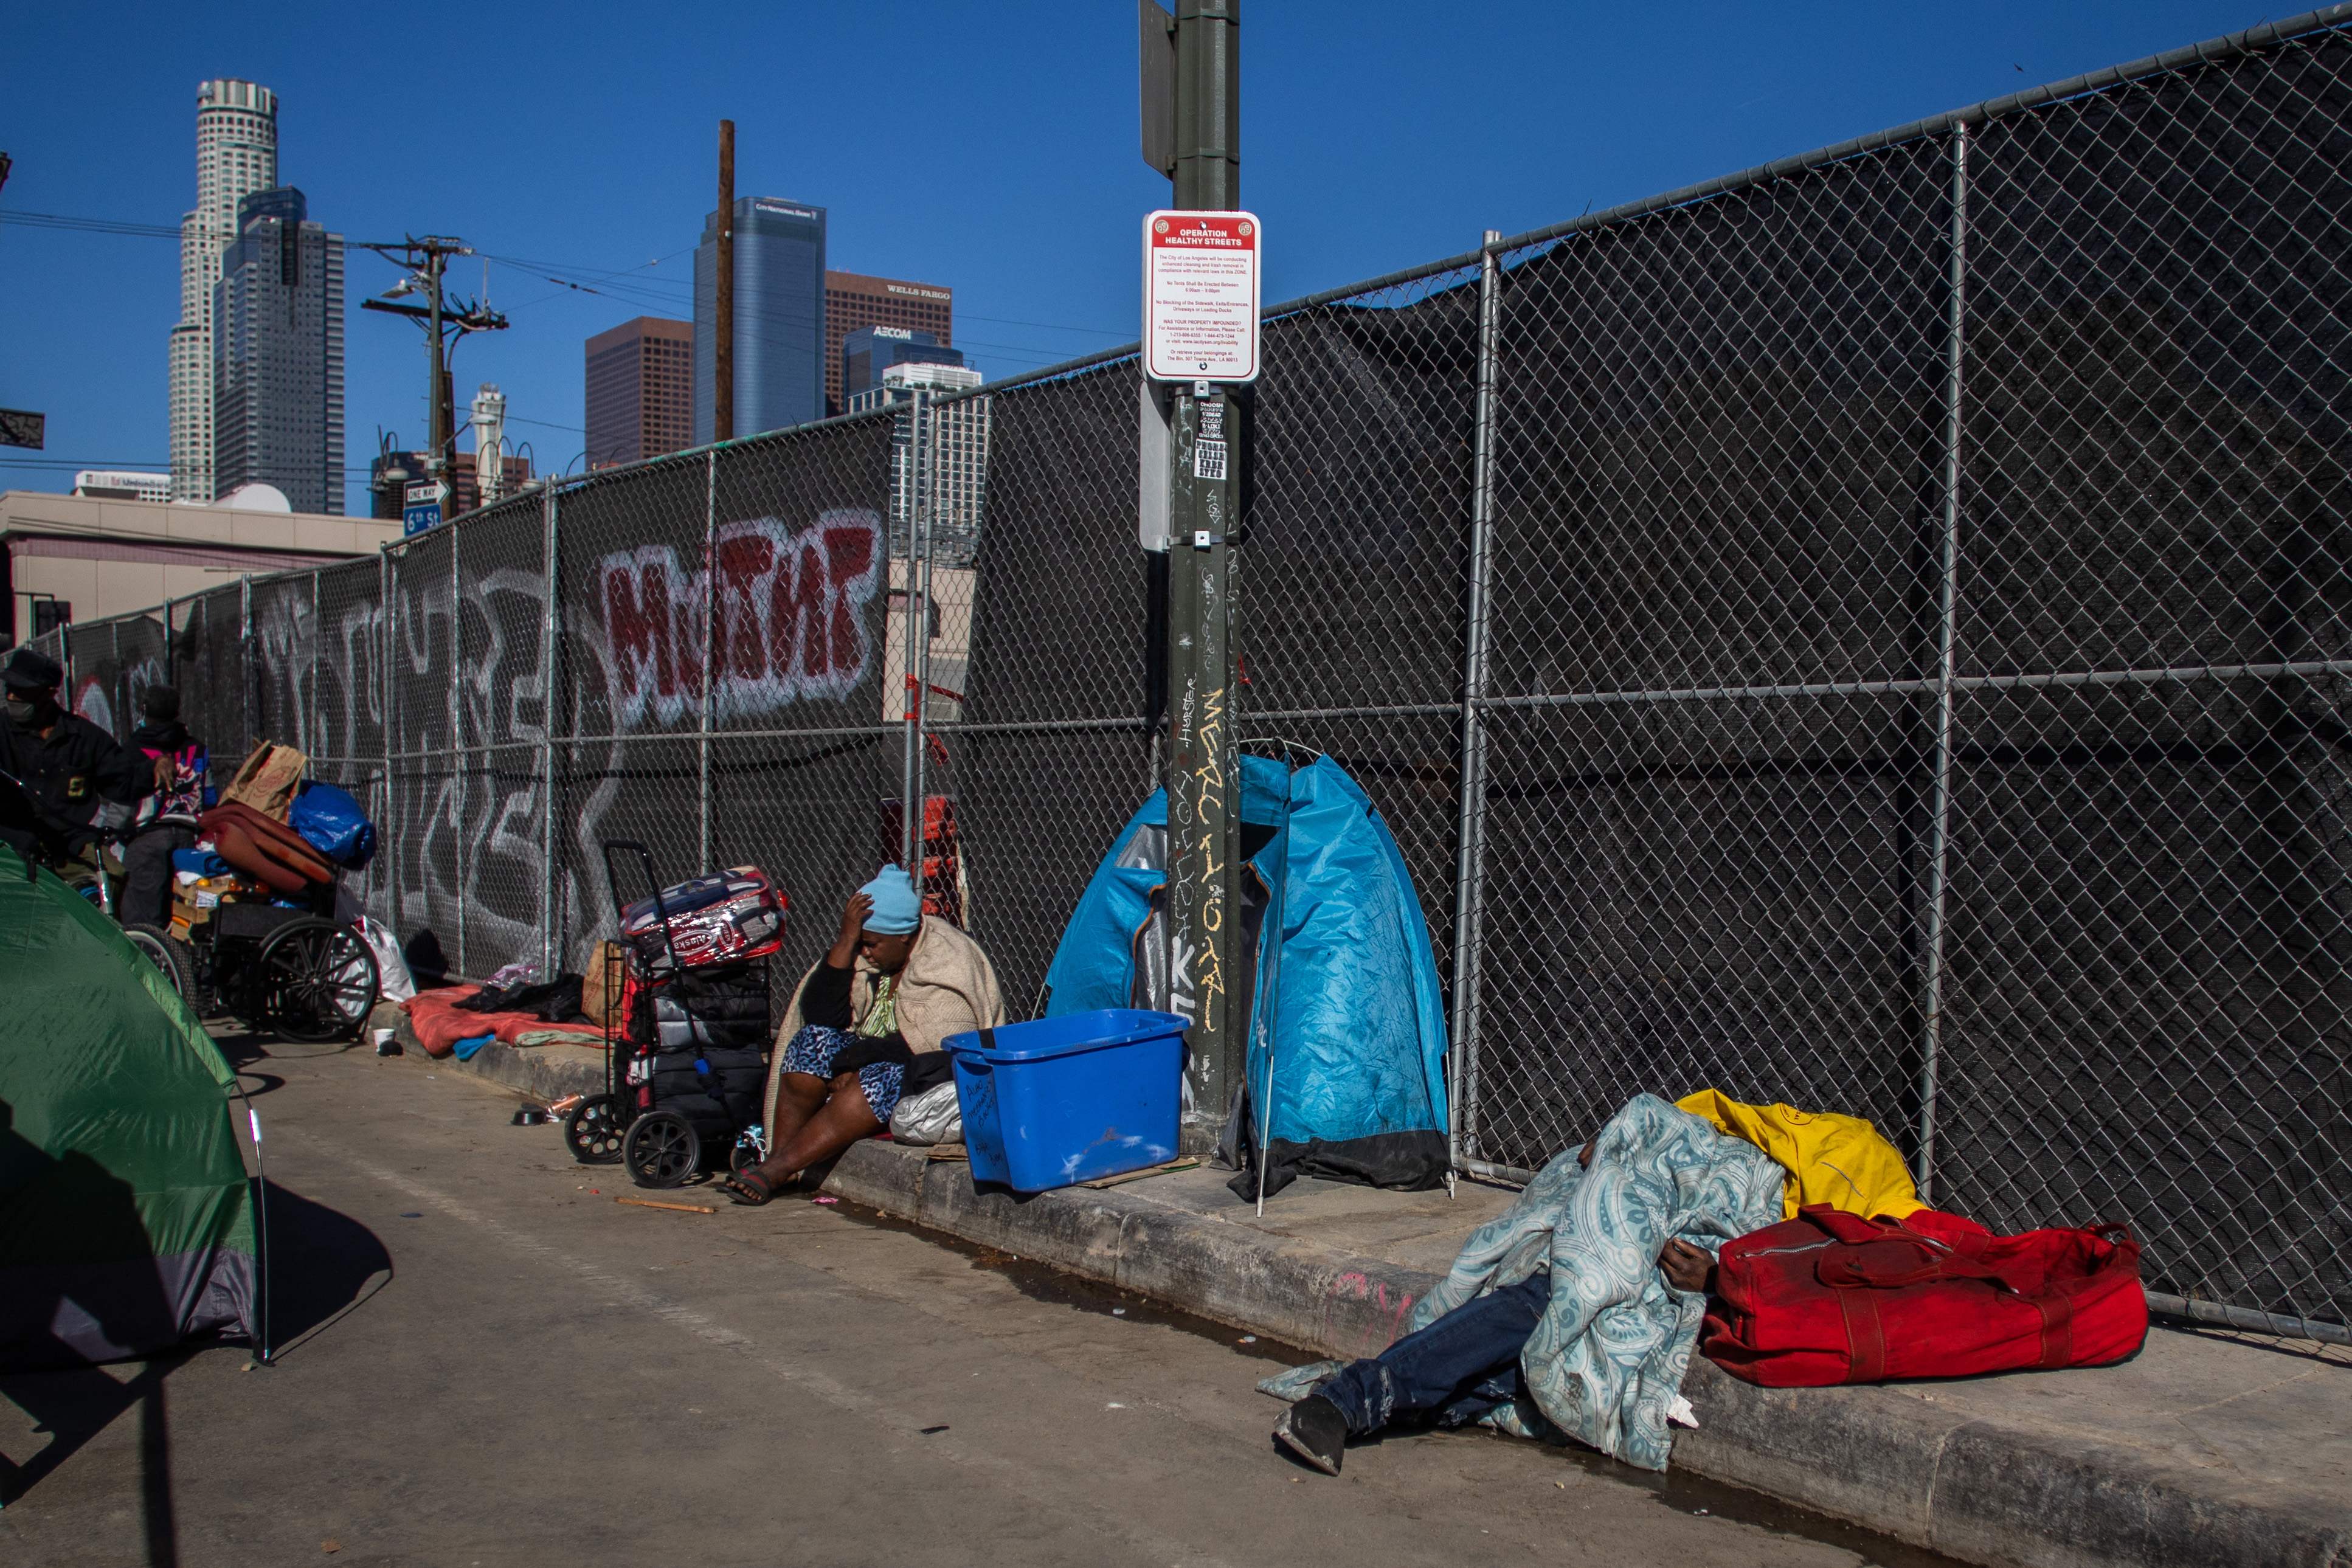 El infame campamento de personas sin hogar, Skid Row, en el centro de Los Ángeles es el hogar de alrededor 8.000 personas